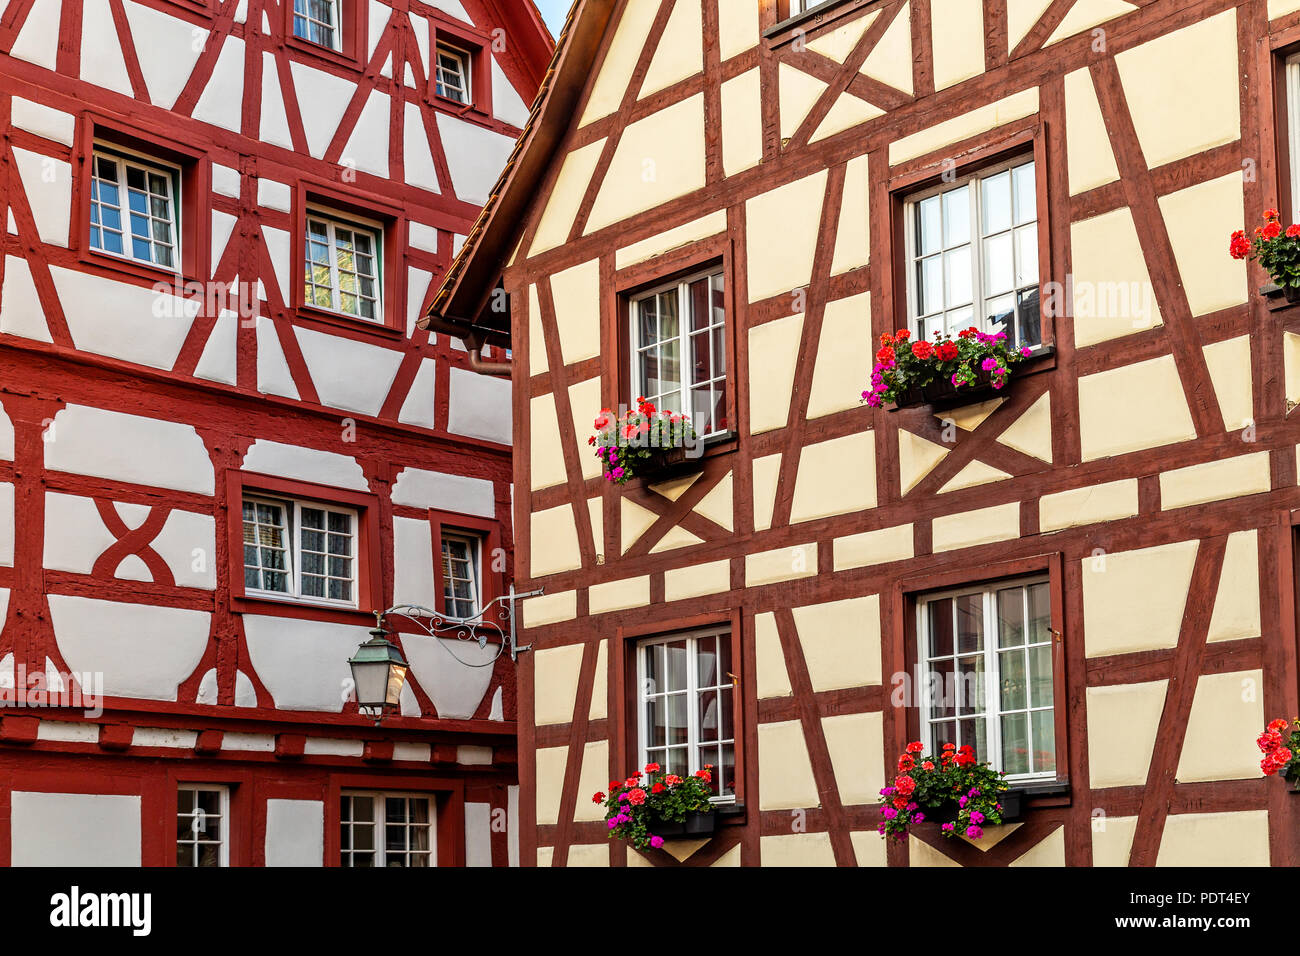 Fachwerkhäuser roten und weißen Fassaden der Häuser in Meersburg, typisches Beispiel für Fachwerk Architektur verteilt in Deutschland und Frankreich, Straßburg Stockfoto